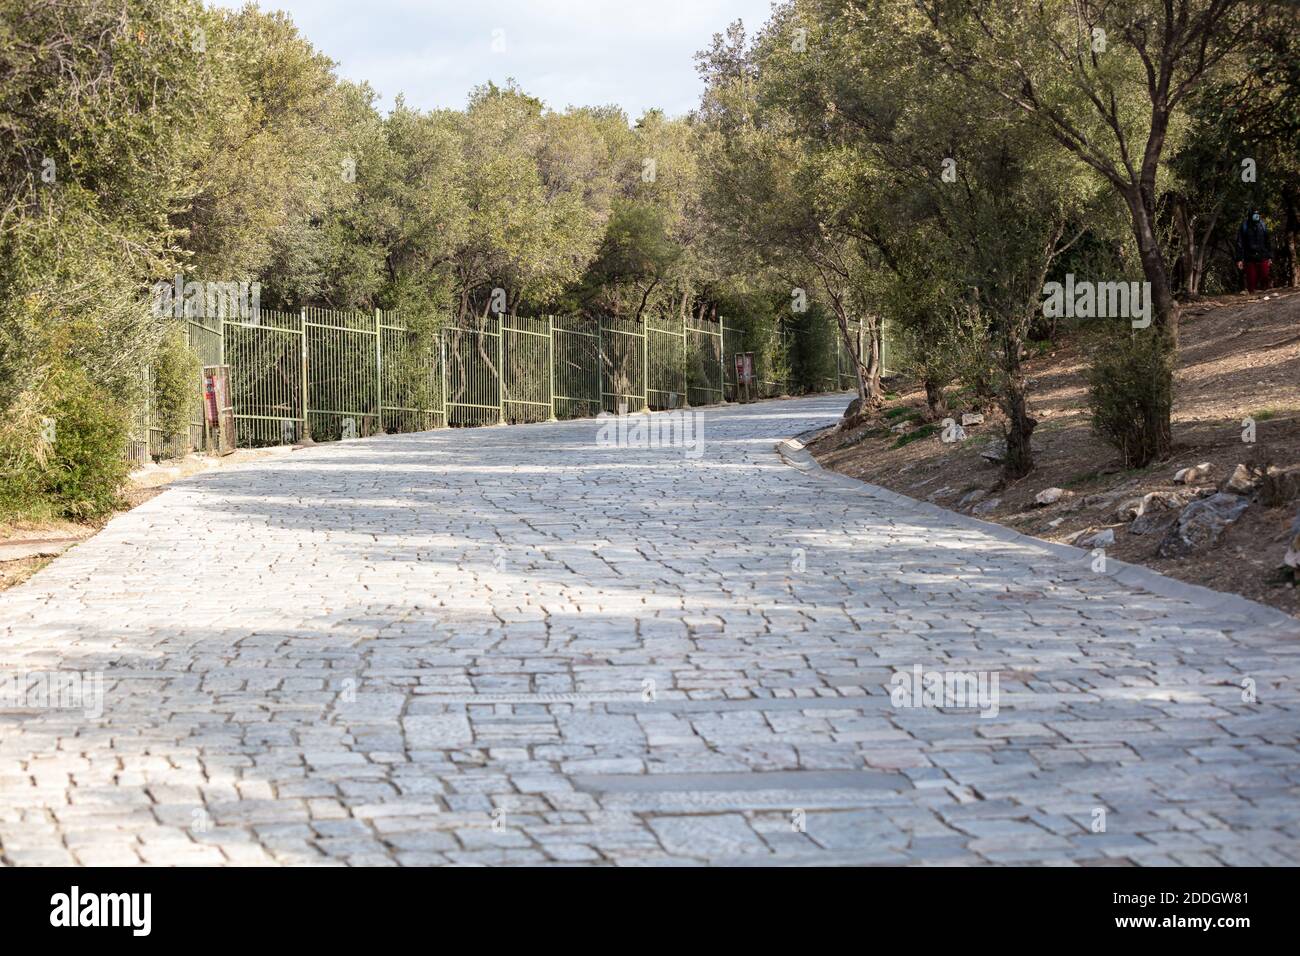 Athen, Griechenland. Kopfsteinpflaster Weg zur Akropolis. Marmor gepflasterte Straße, griechische Flora, blauer wolkiger Himmel an einem sonnigen Tag. Stockfoto